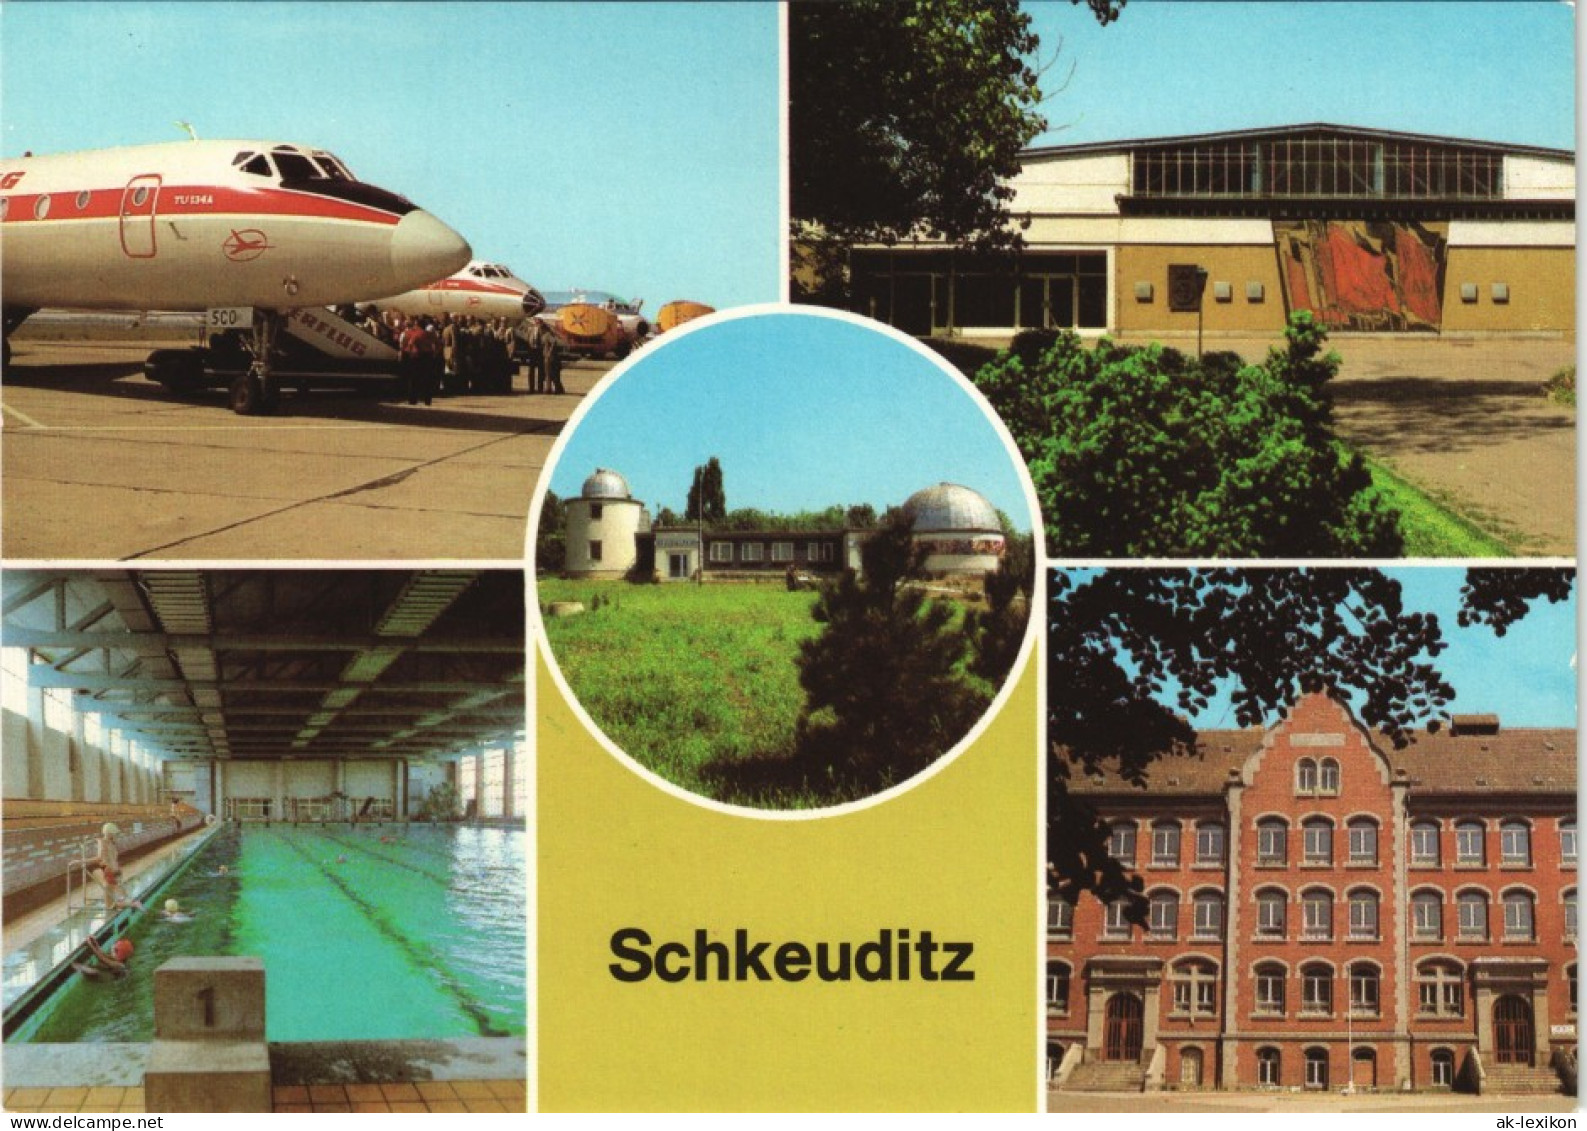 Schkeuditz Flughafen, Planetarium, Schwimmhalle, Lessing-Oberschule 1981 - Schkeuditz